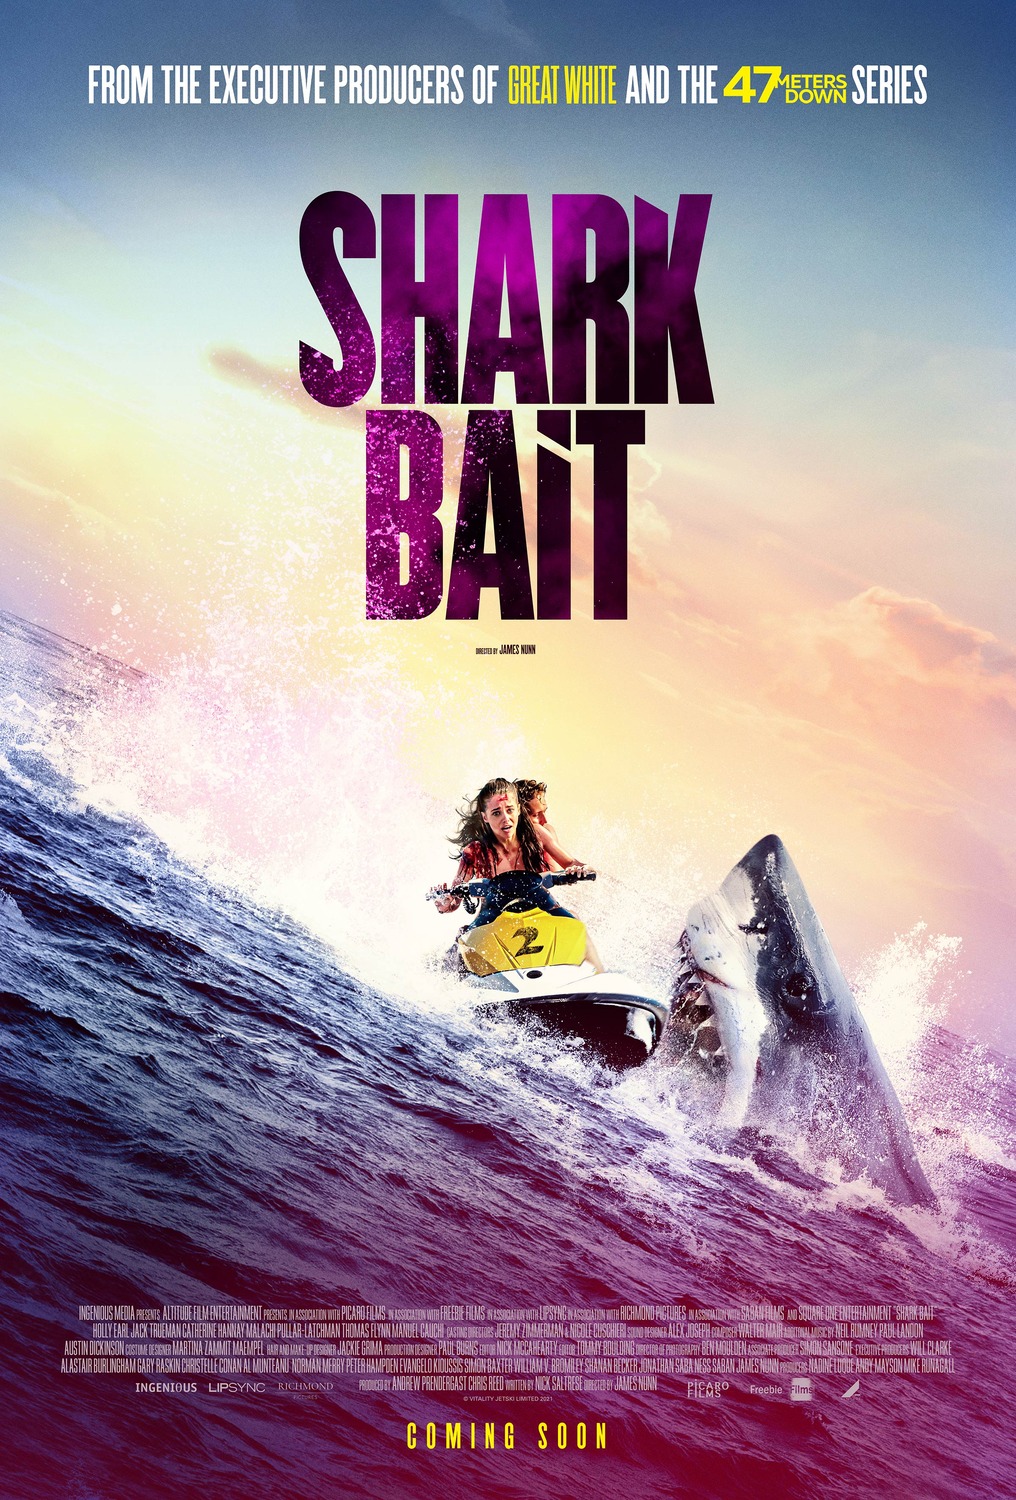 Shark Bait Trailer & Poster